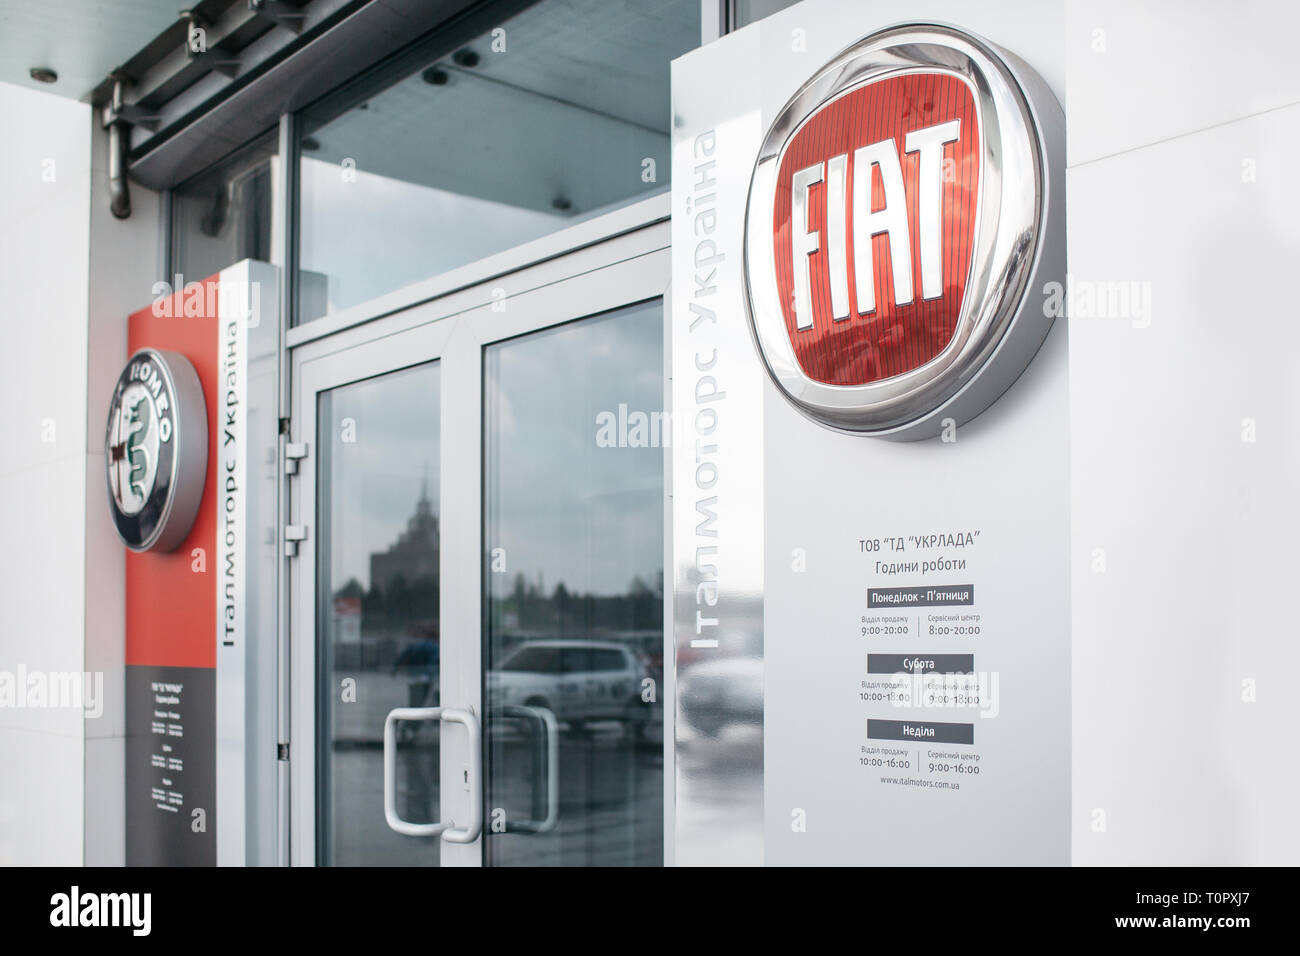 Immagine del concessionario Fiat store con emblema davanti alla porta di casa. È pulito e ha un qualche miracolo effetto Foto Stock